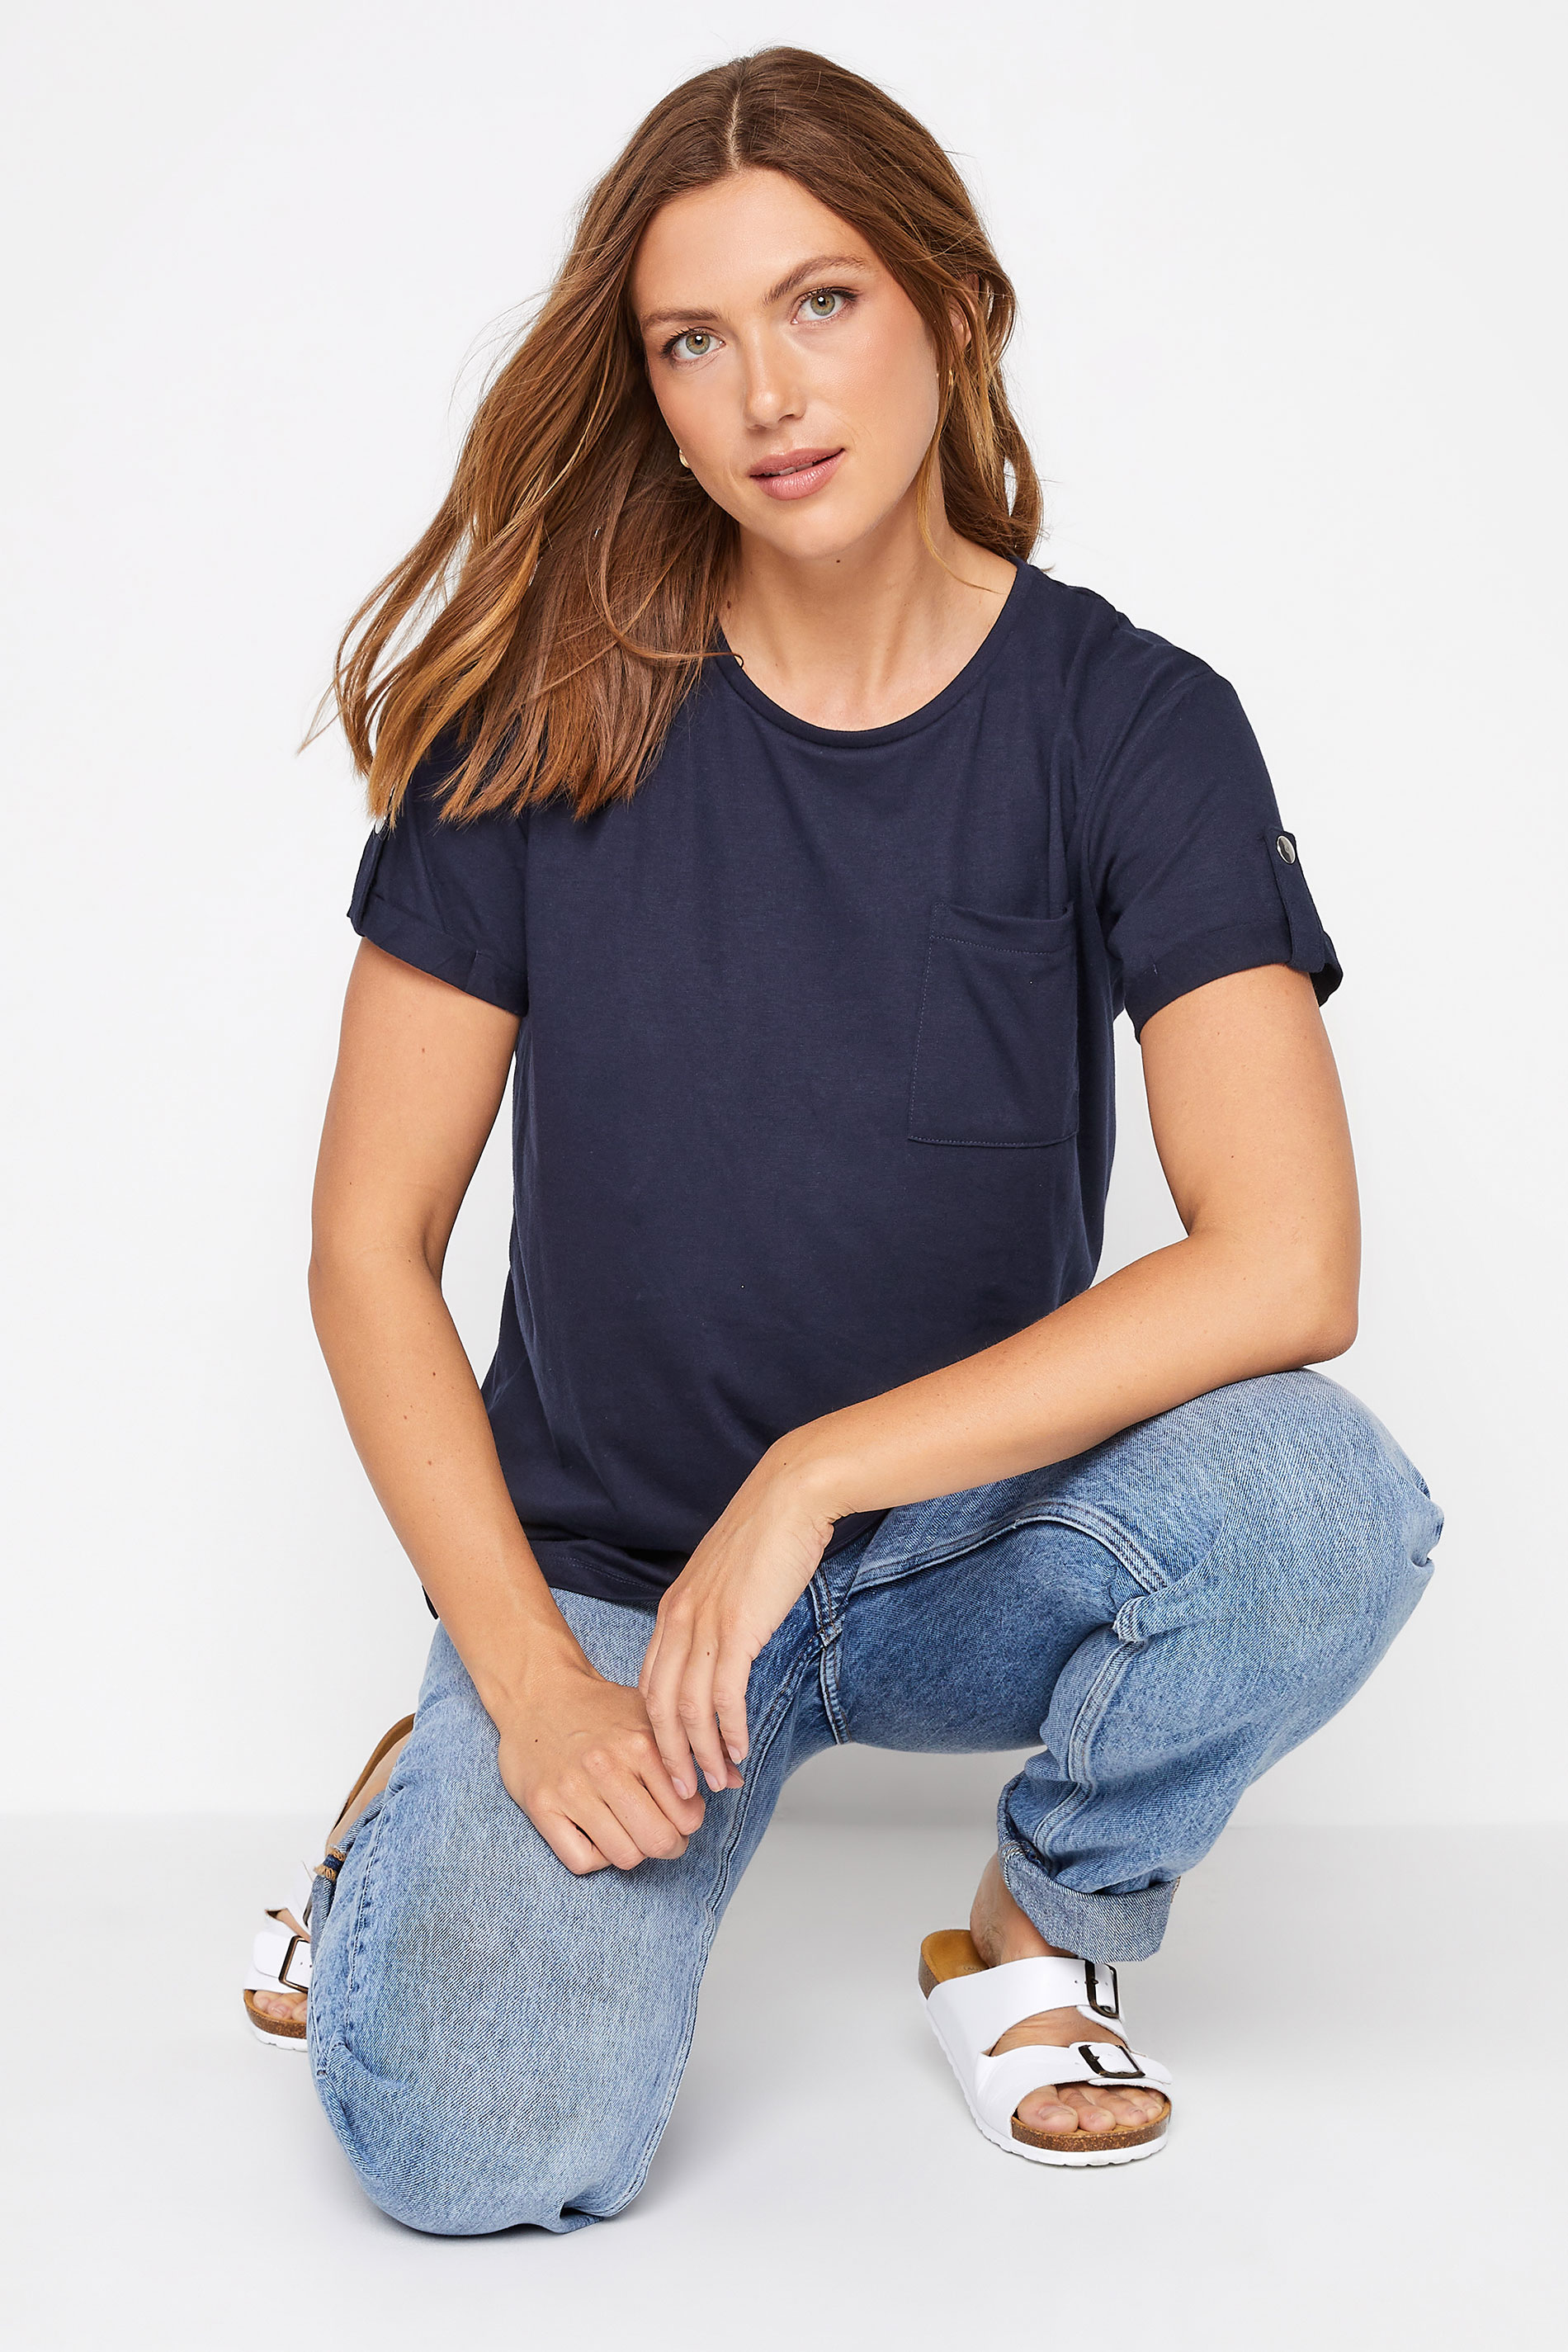 Tall Women's LTS Navy Blue Short Sleeve Pocket T-Shirt | Long Tall Sally 1